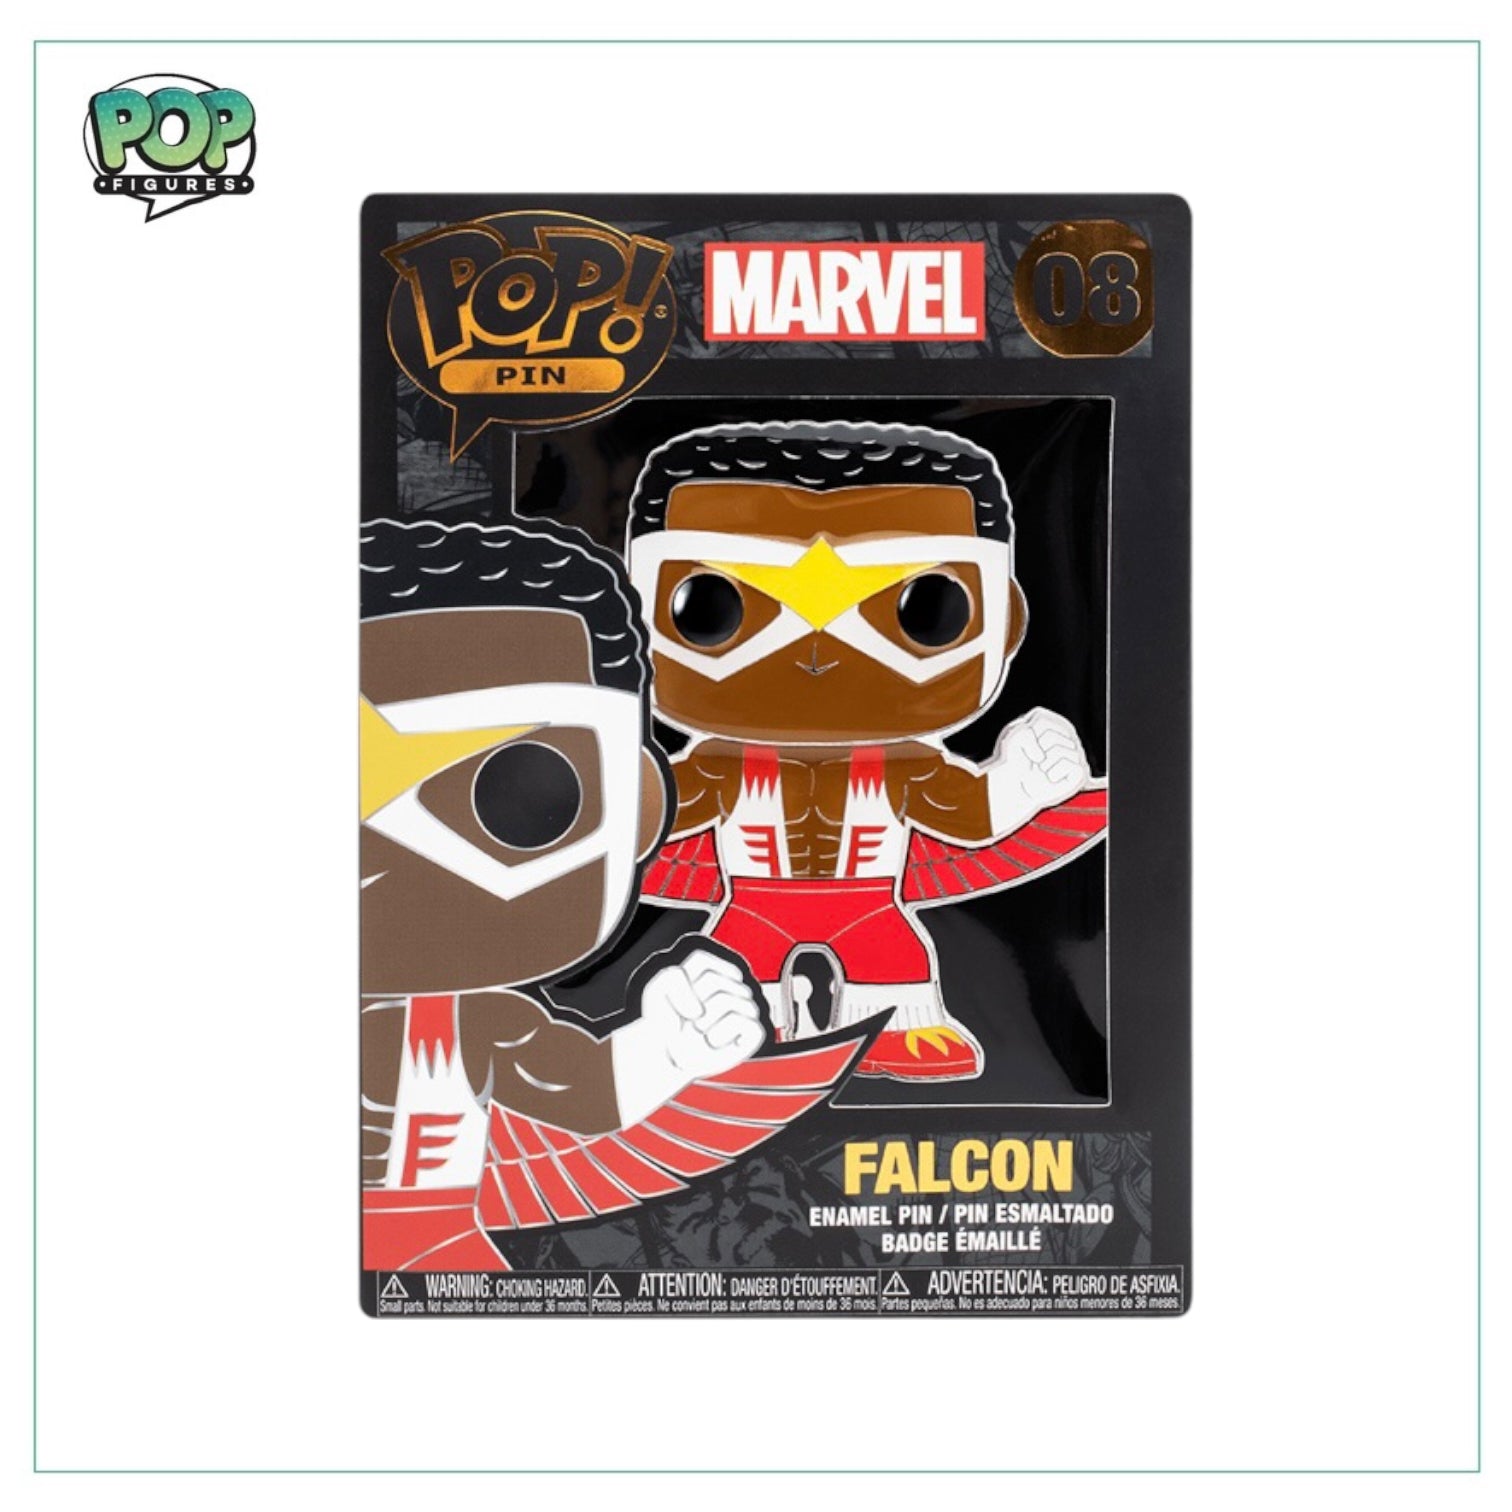 Falcon #08 Funko Enamel Pin! - Marvel